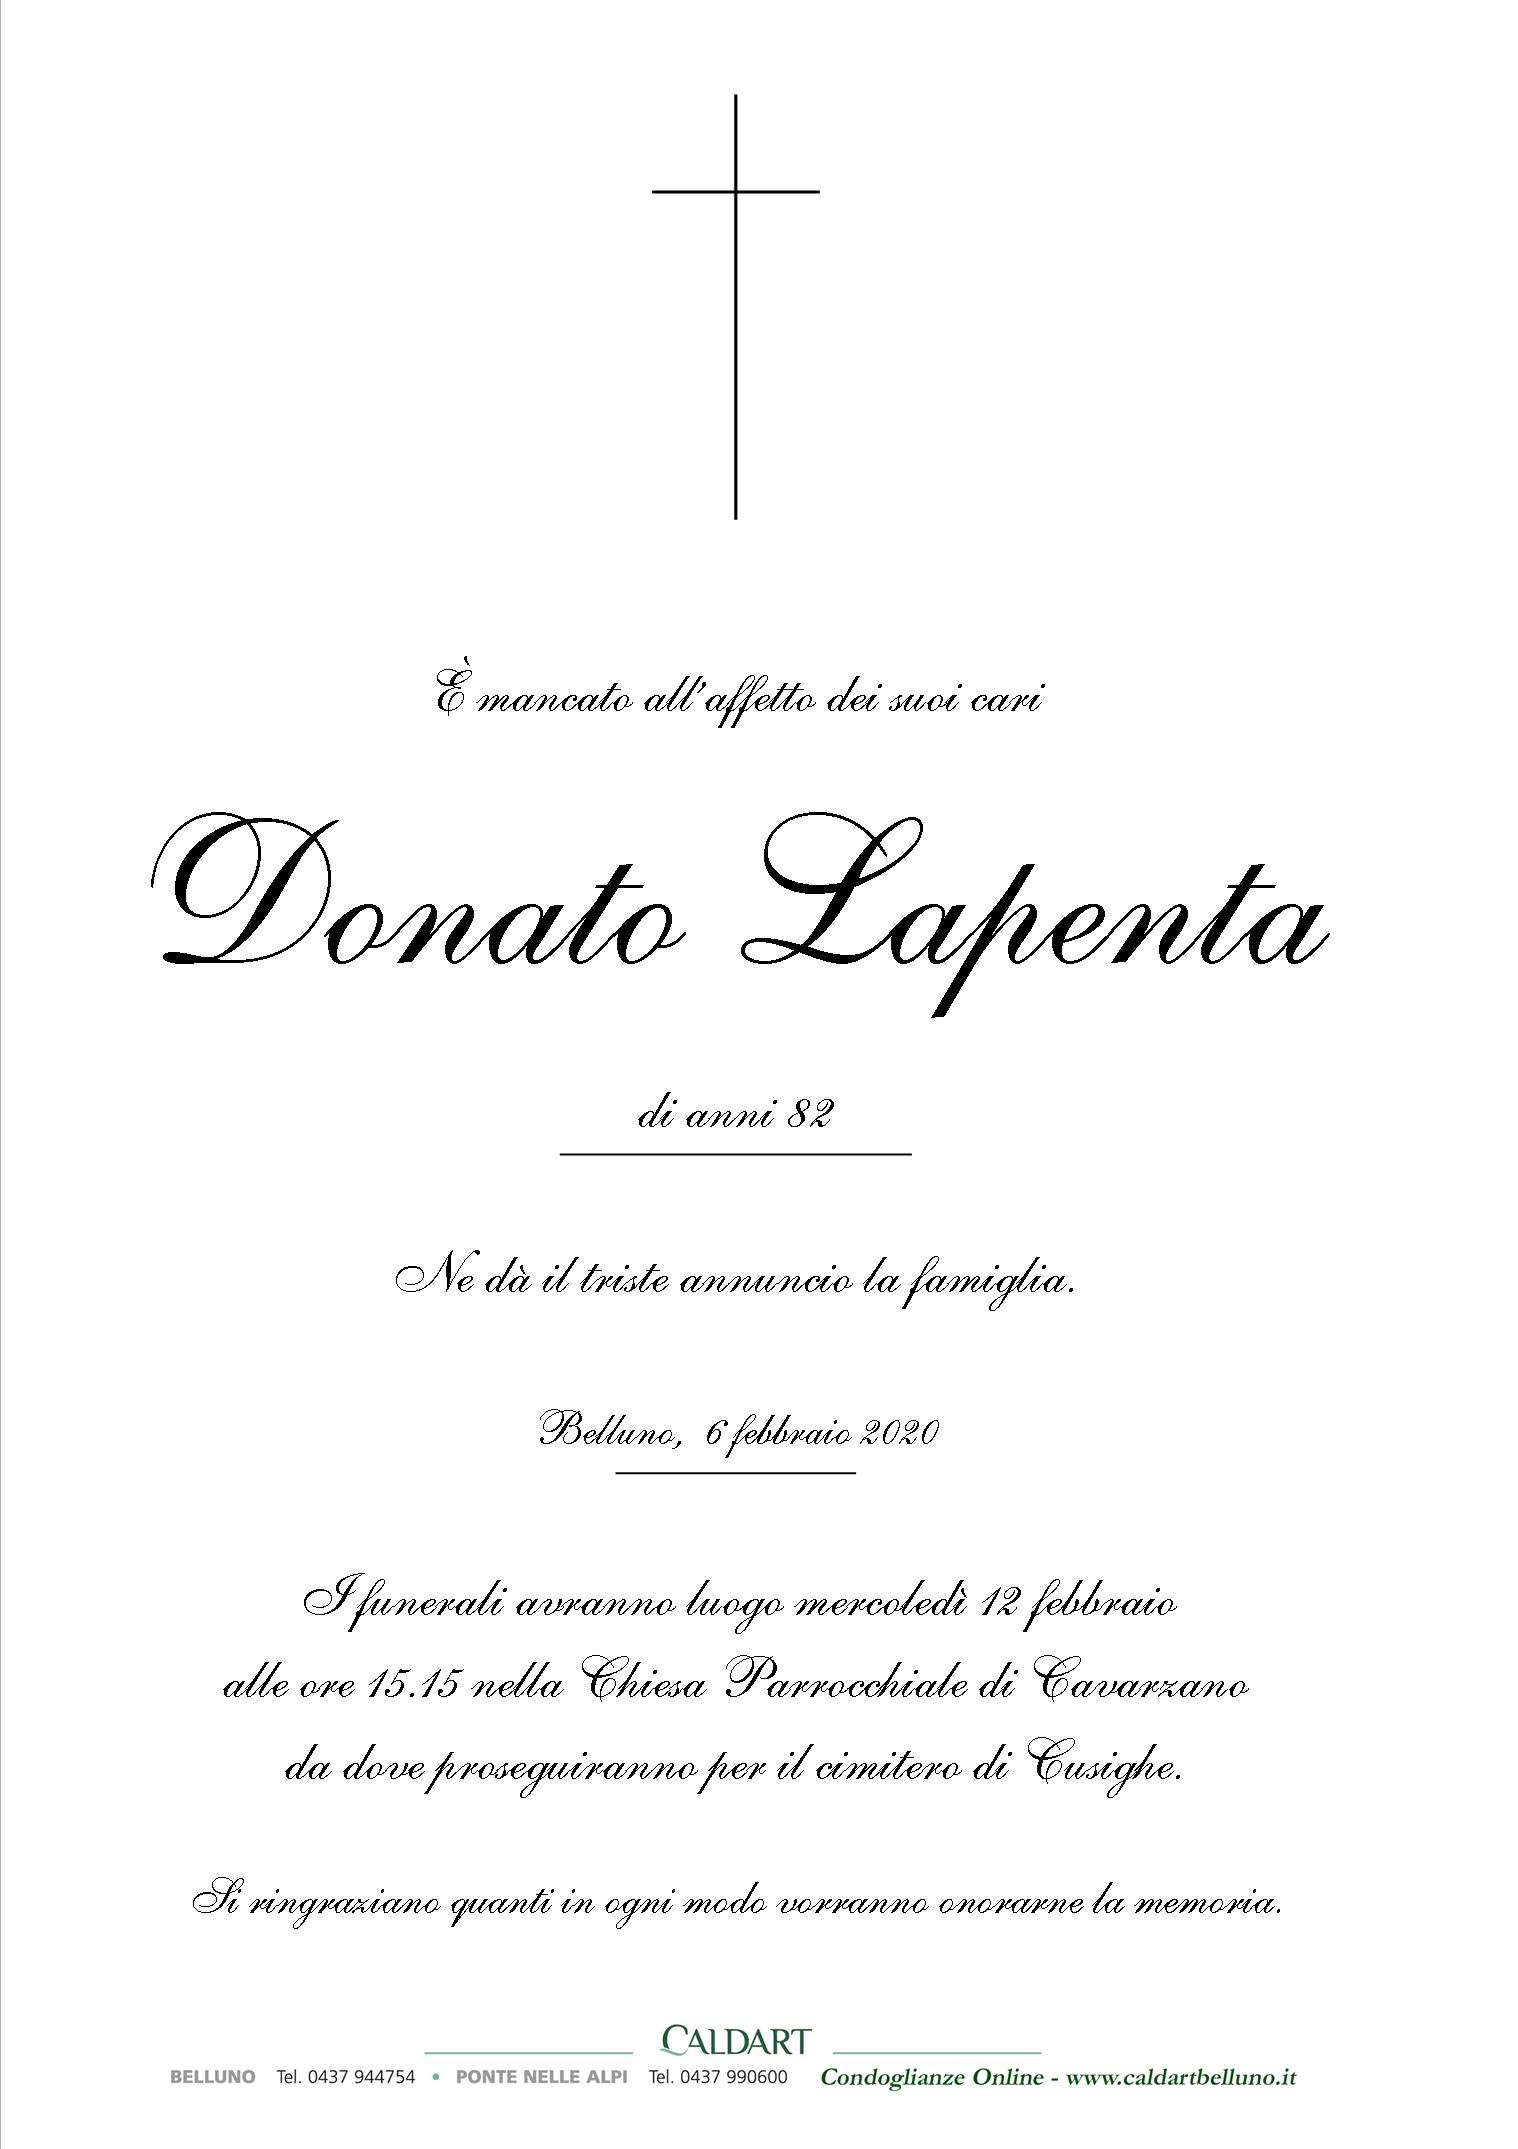 Lapenta Donato